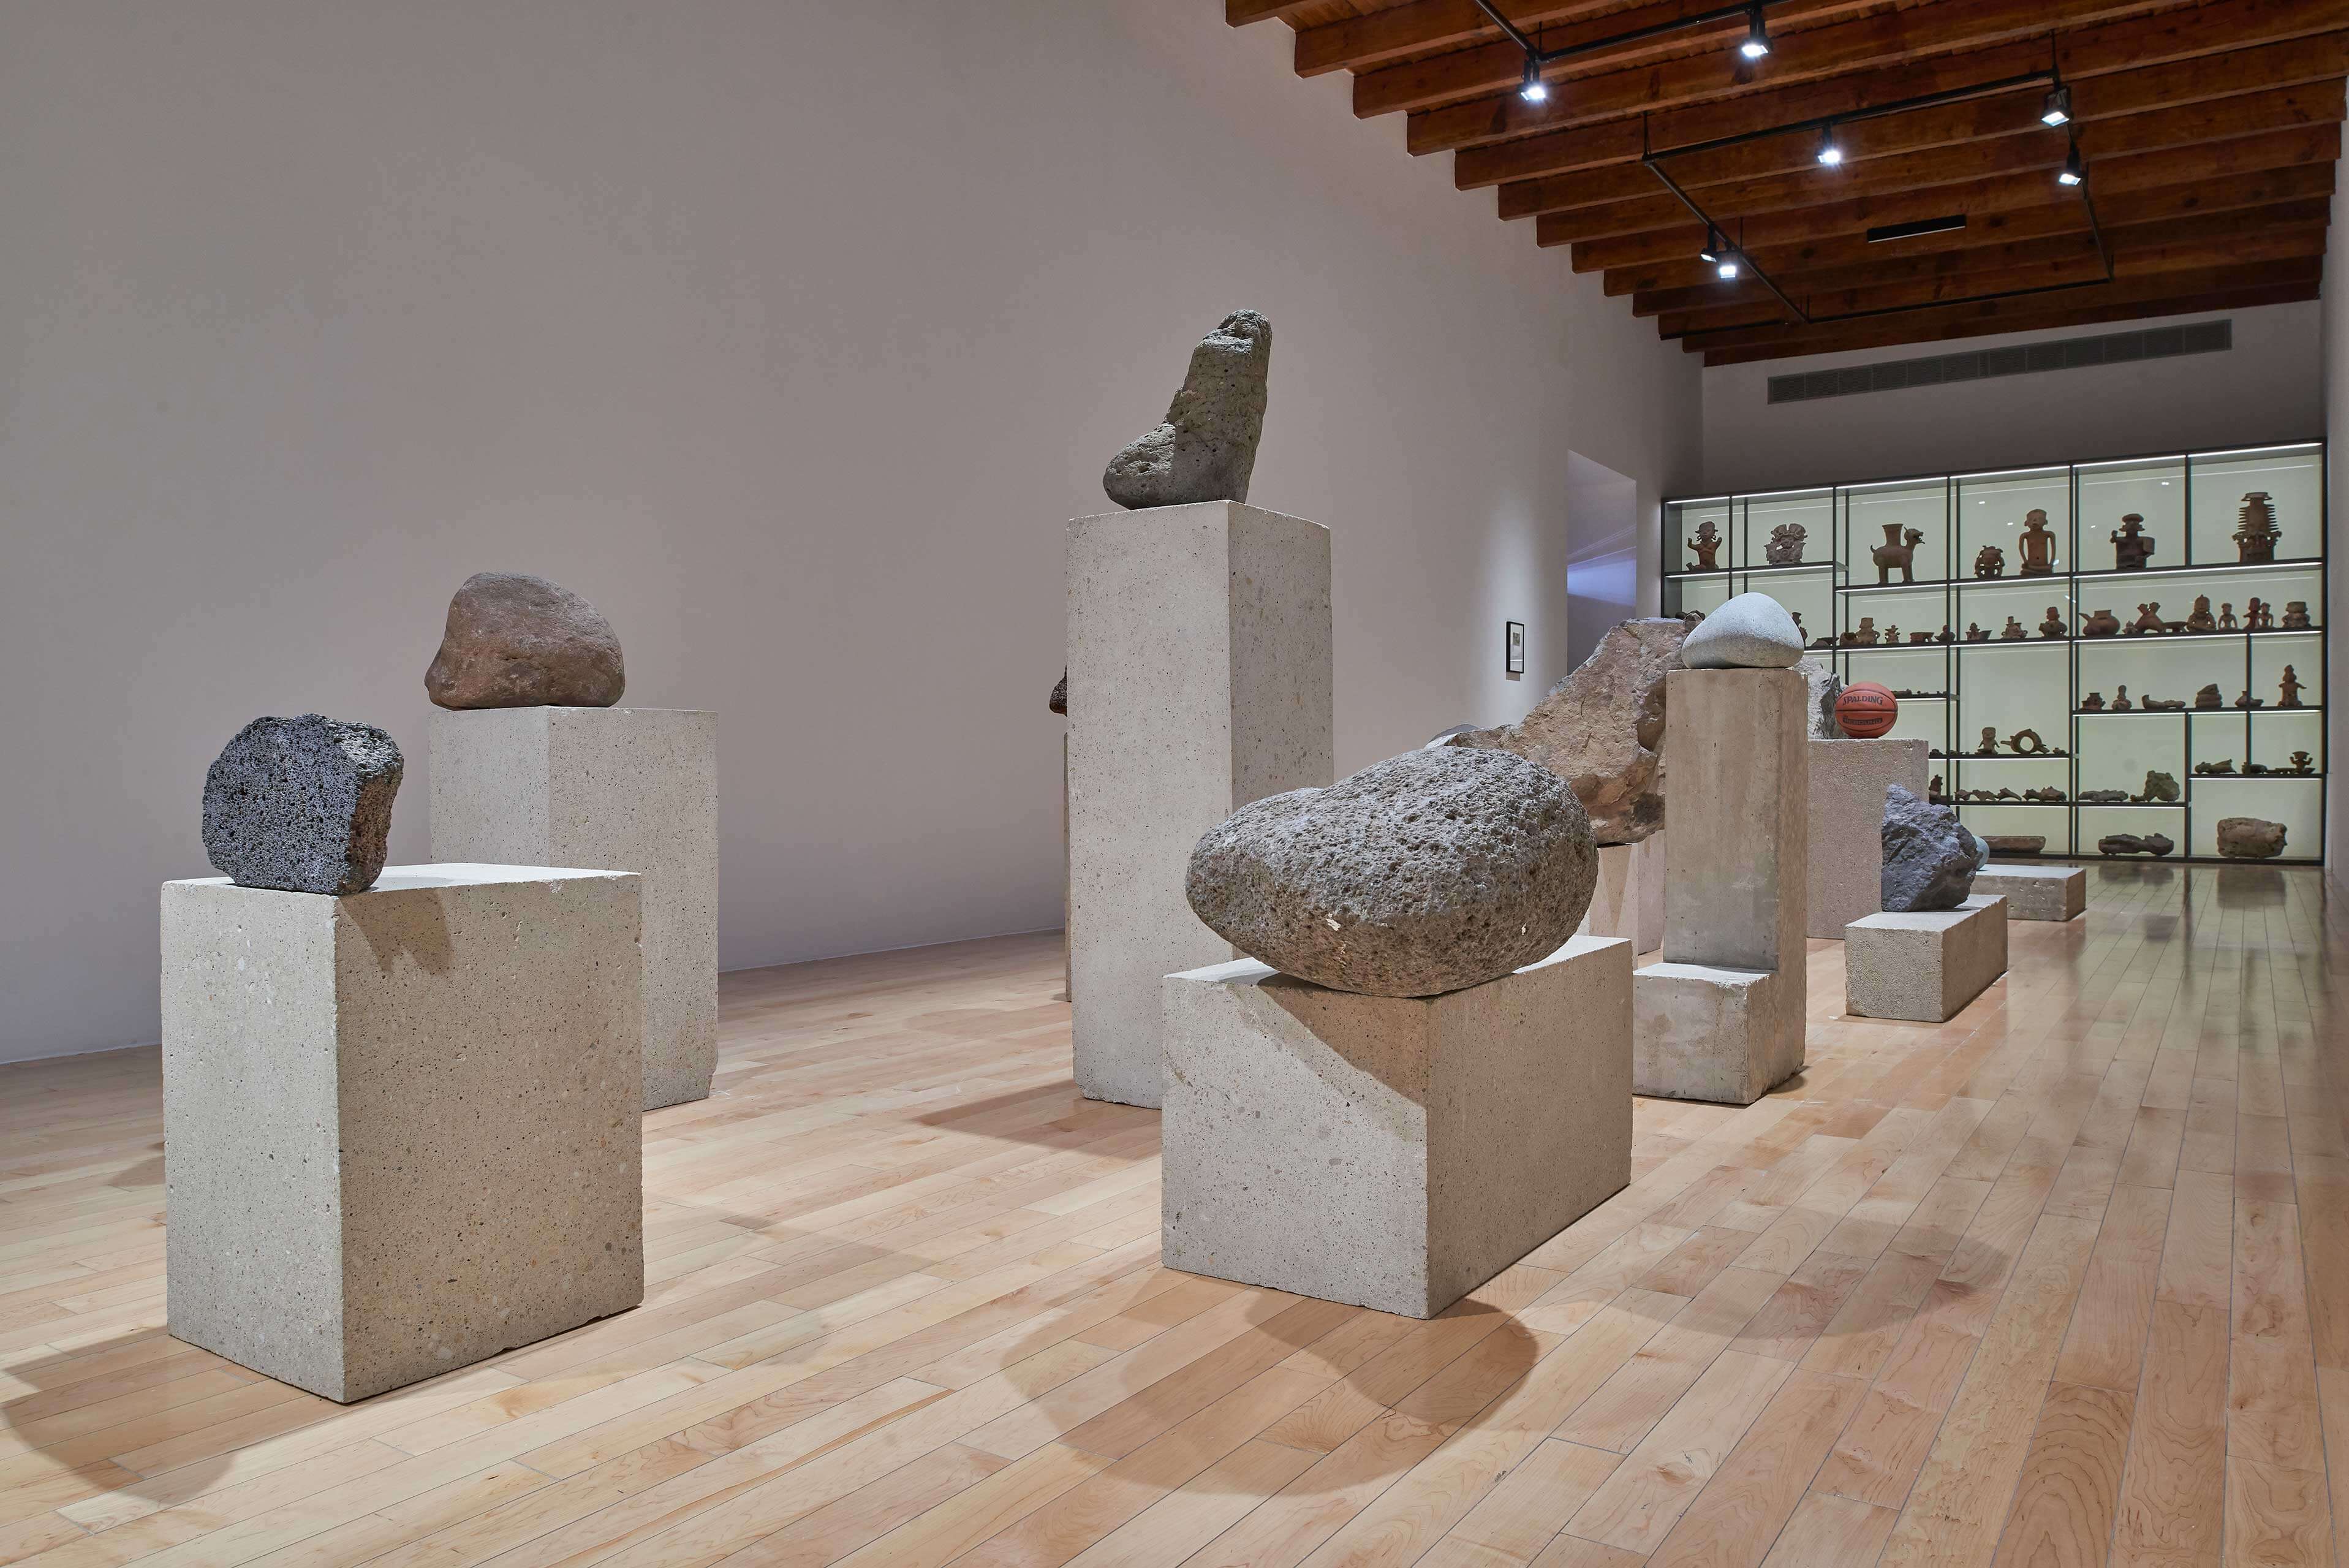 La singularidad tiene algo de irreal | El tiempo en las cosas. Salas de Arte Contemporáneo | Museo Amparo, Puebla